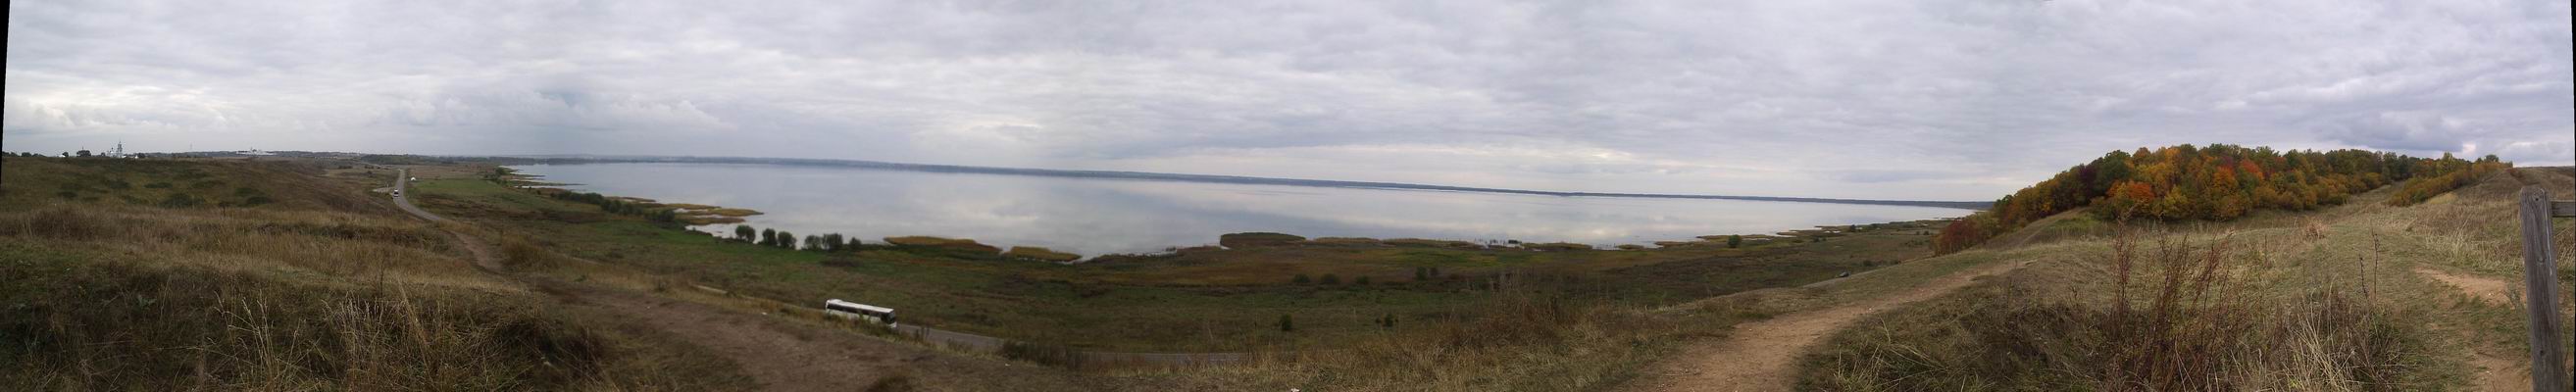 Плещеево озеро. Вид с Александровой горы. Переславль-Залесский